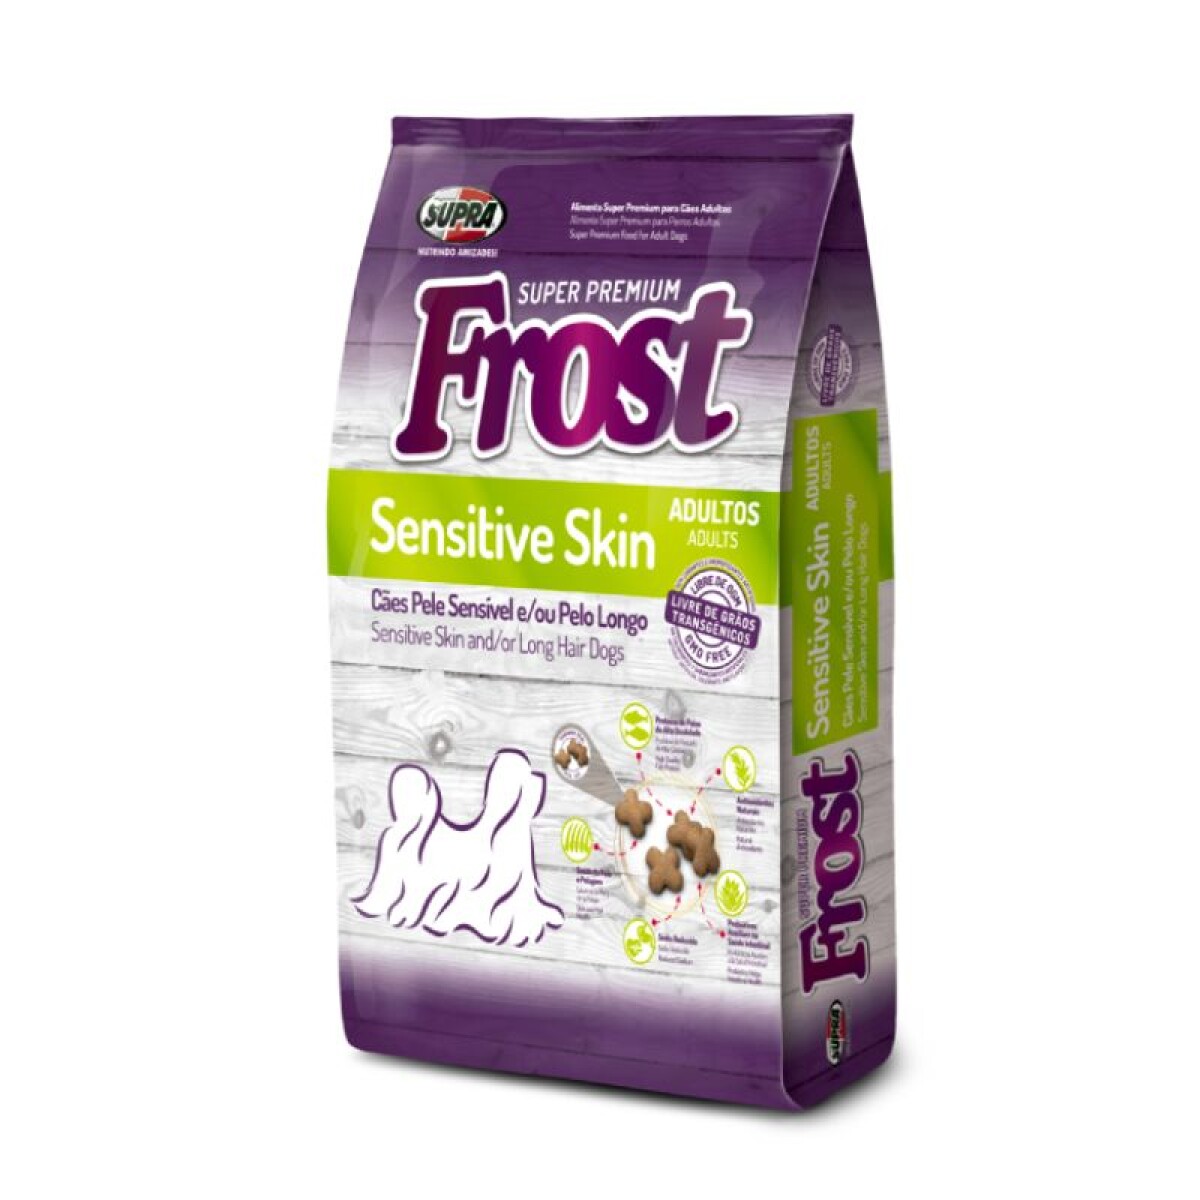 FROST SENSITIVE SKIN 10KG - Frost Sensitive Skin 10kg 